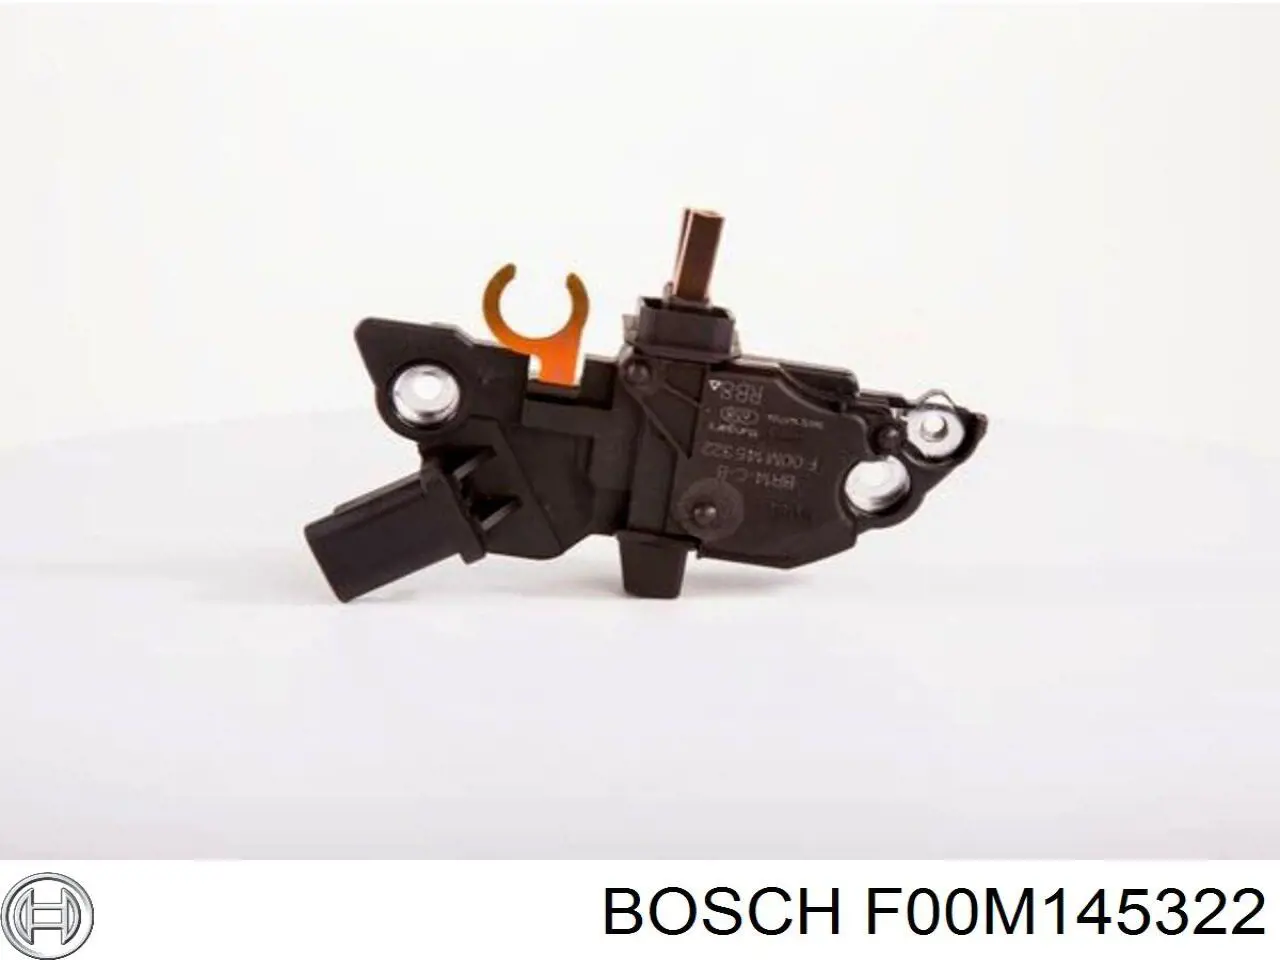 F00M145322 Bosch relê-regulador do gerador (relê de carregamento)